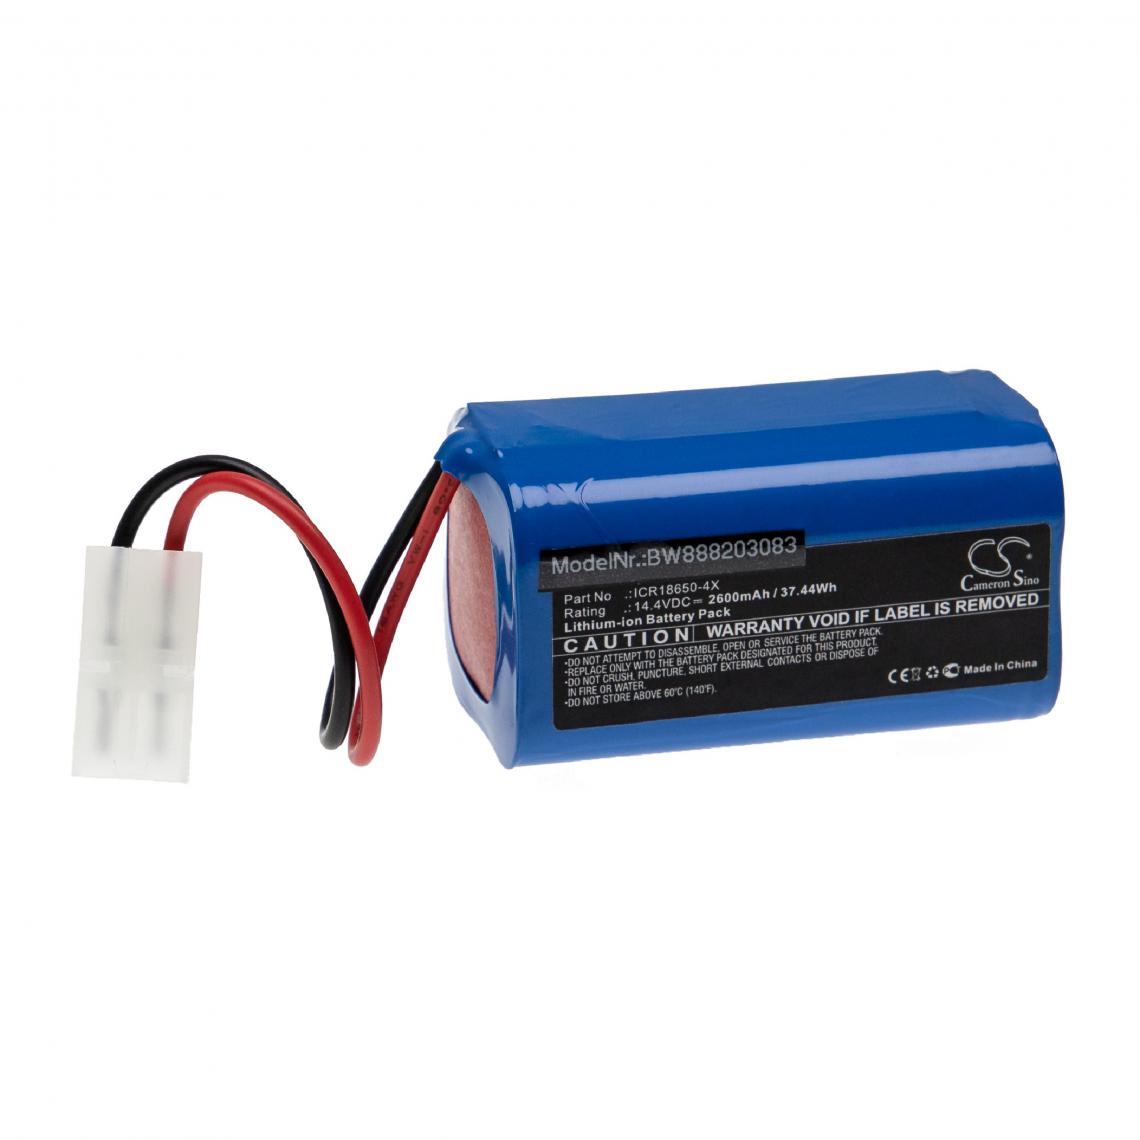 Vhbw - vhbw Batterie compatible avec Spring ECG-902A appareil médical (2600mAh, 14,4V, Li-ion) - Piles spécifiques